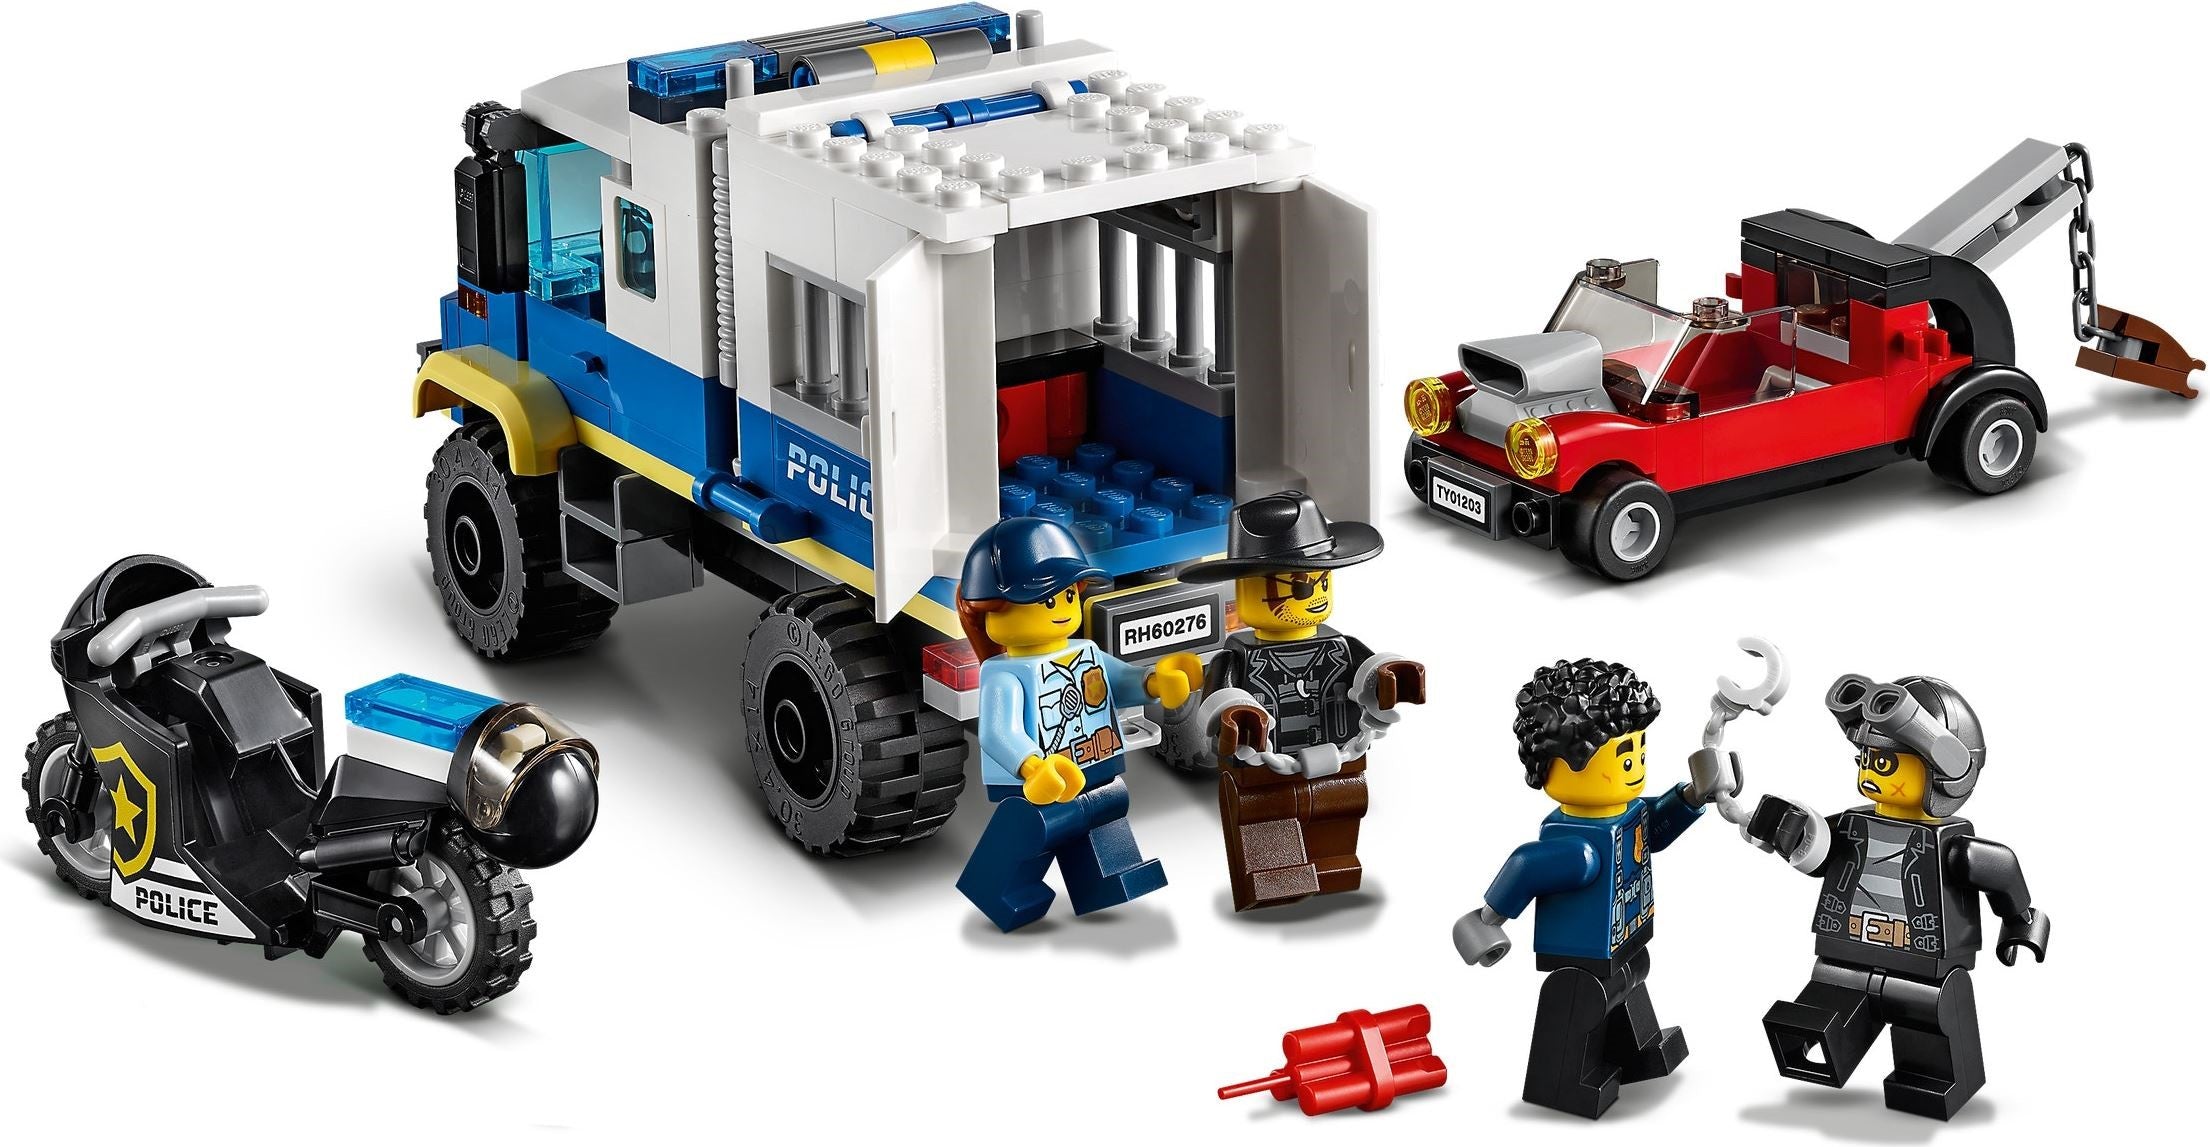 LEGO 60276 Police Prisoner Transport